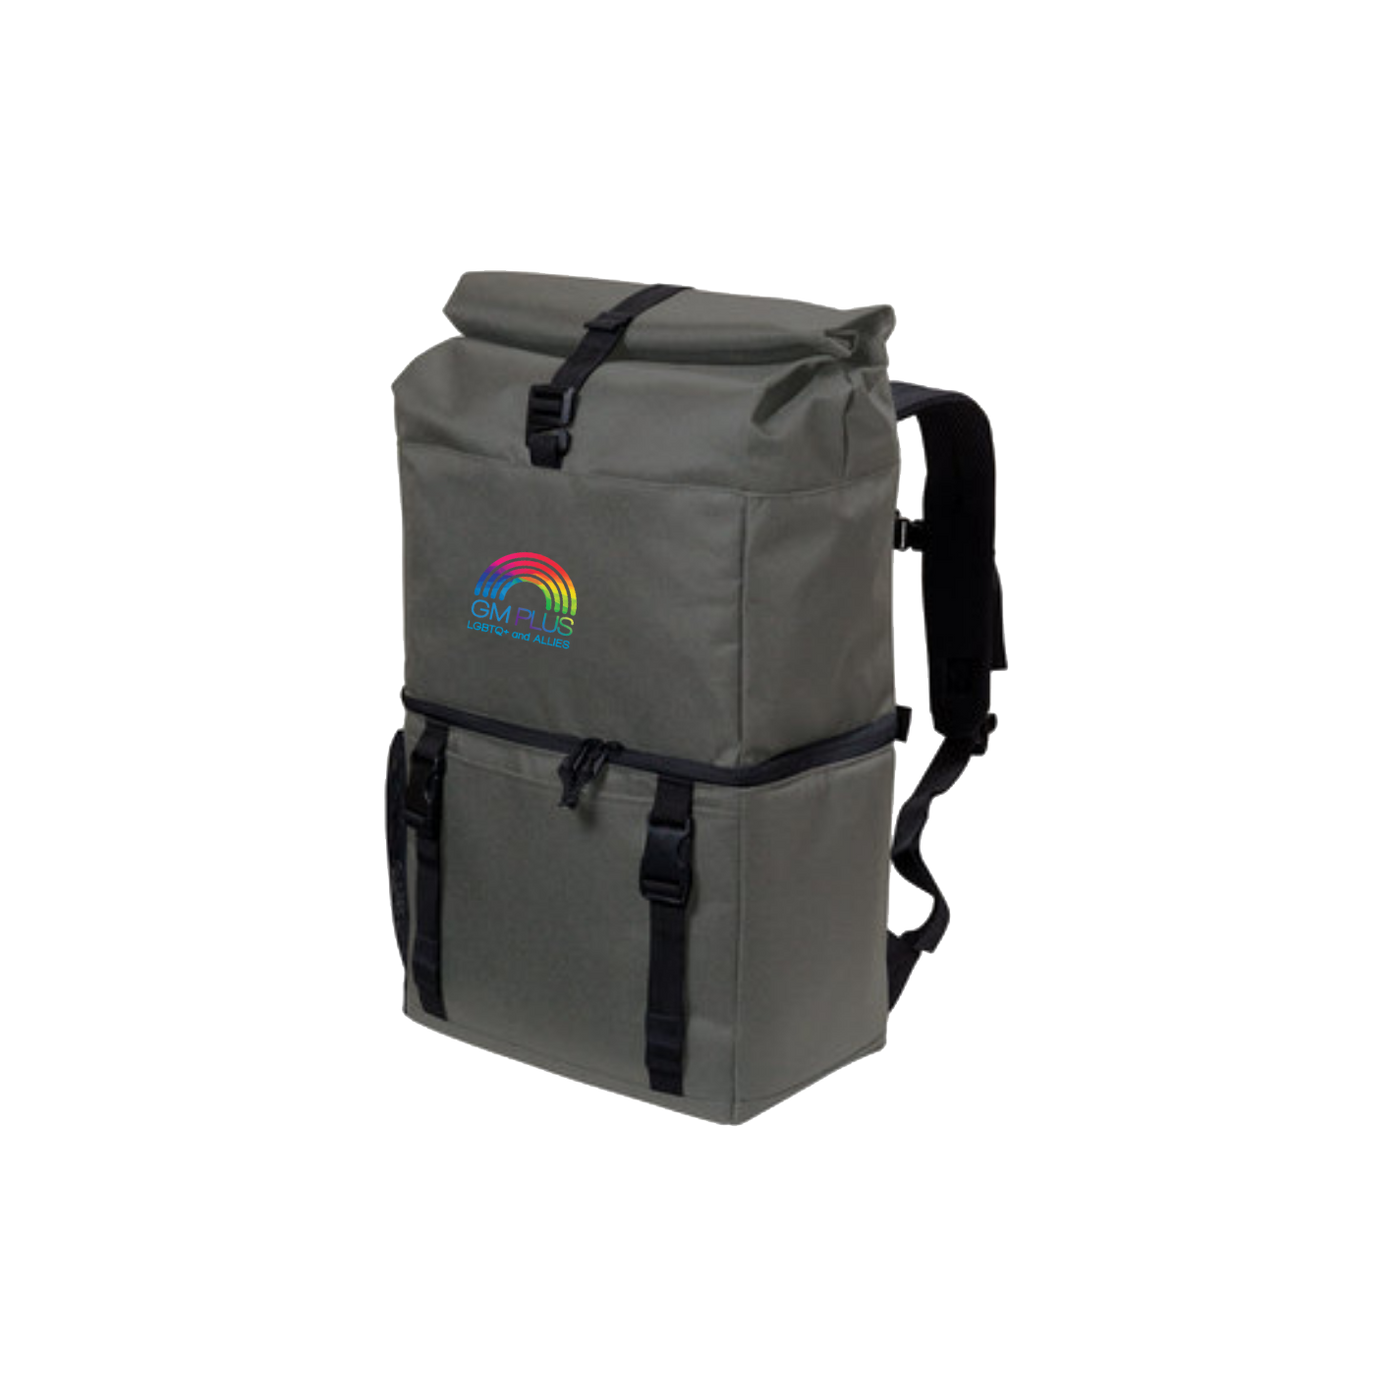 GM PLUS ERG Backpack Cooler